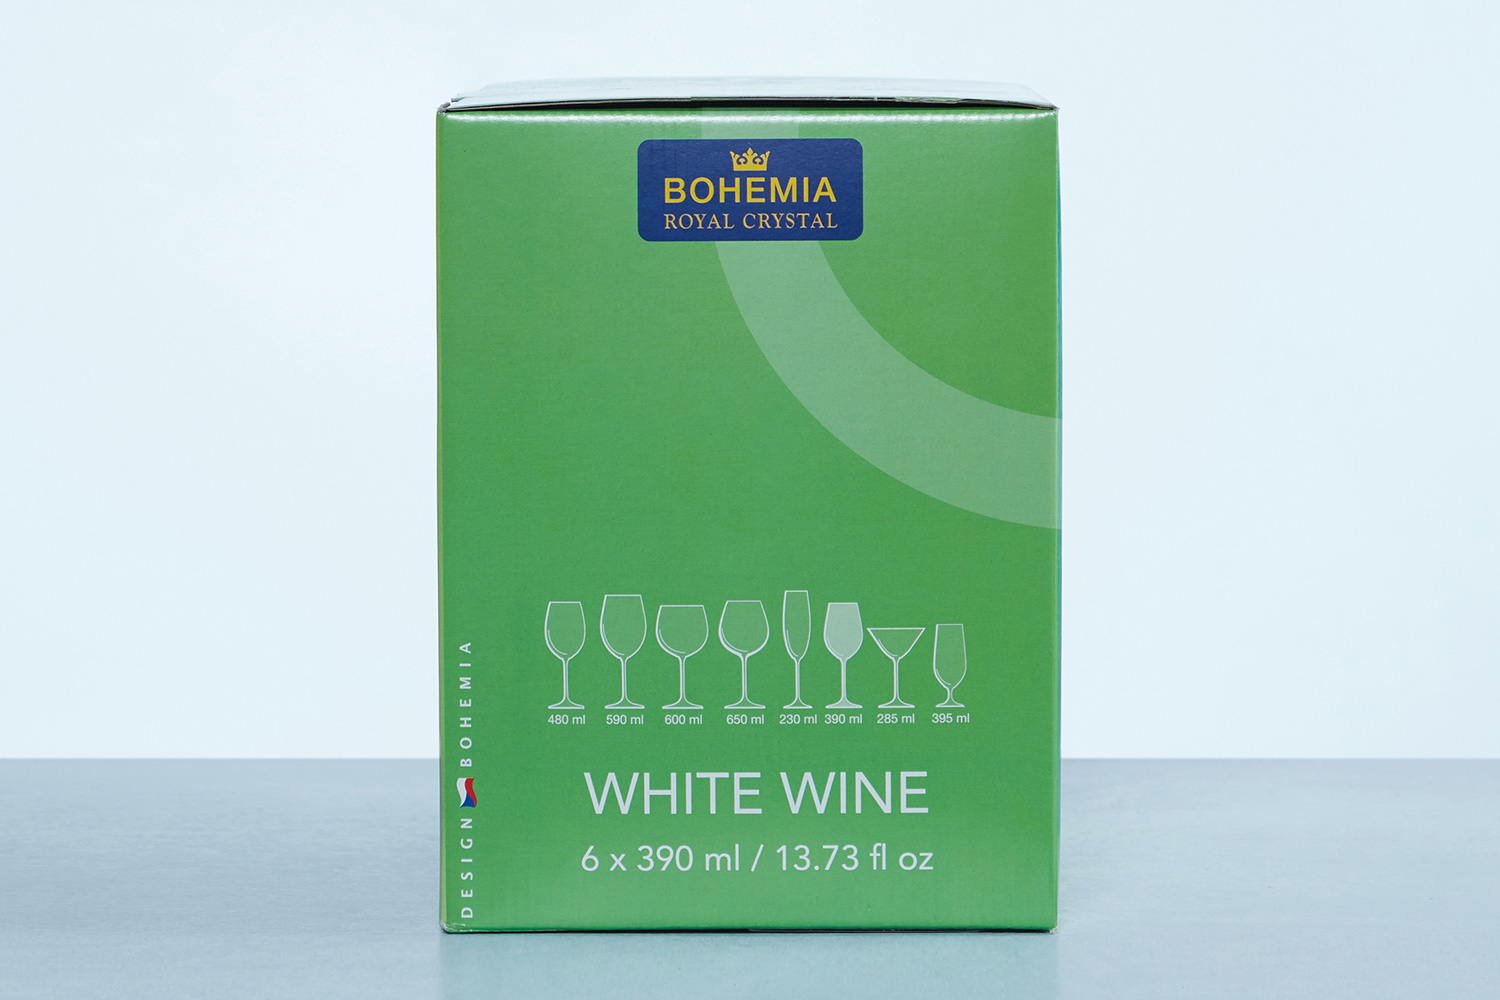 Набор бокалов для белого вина Gastro